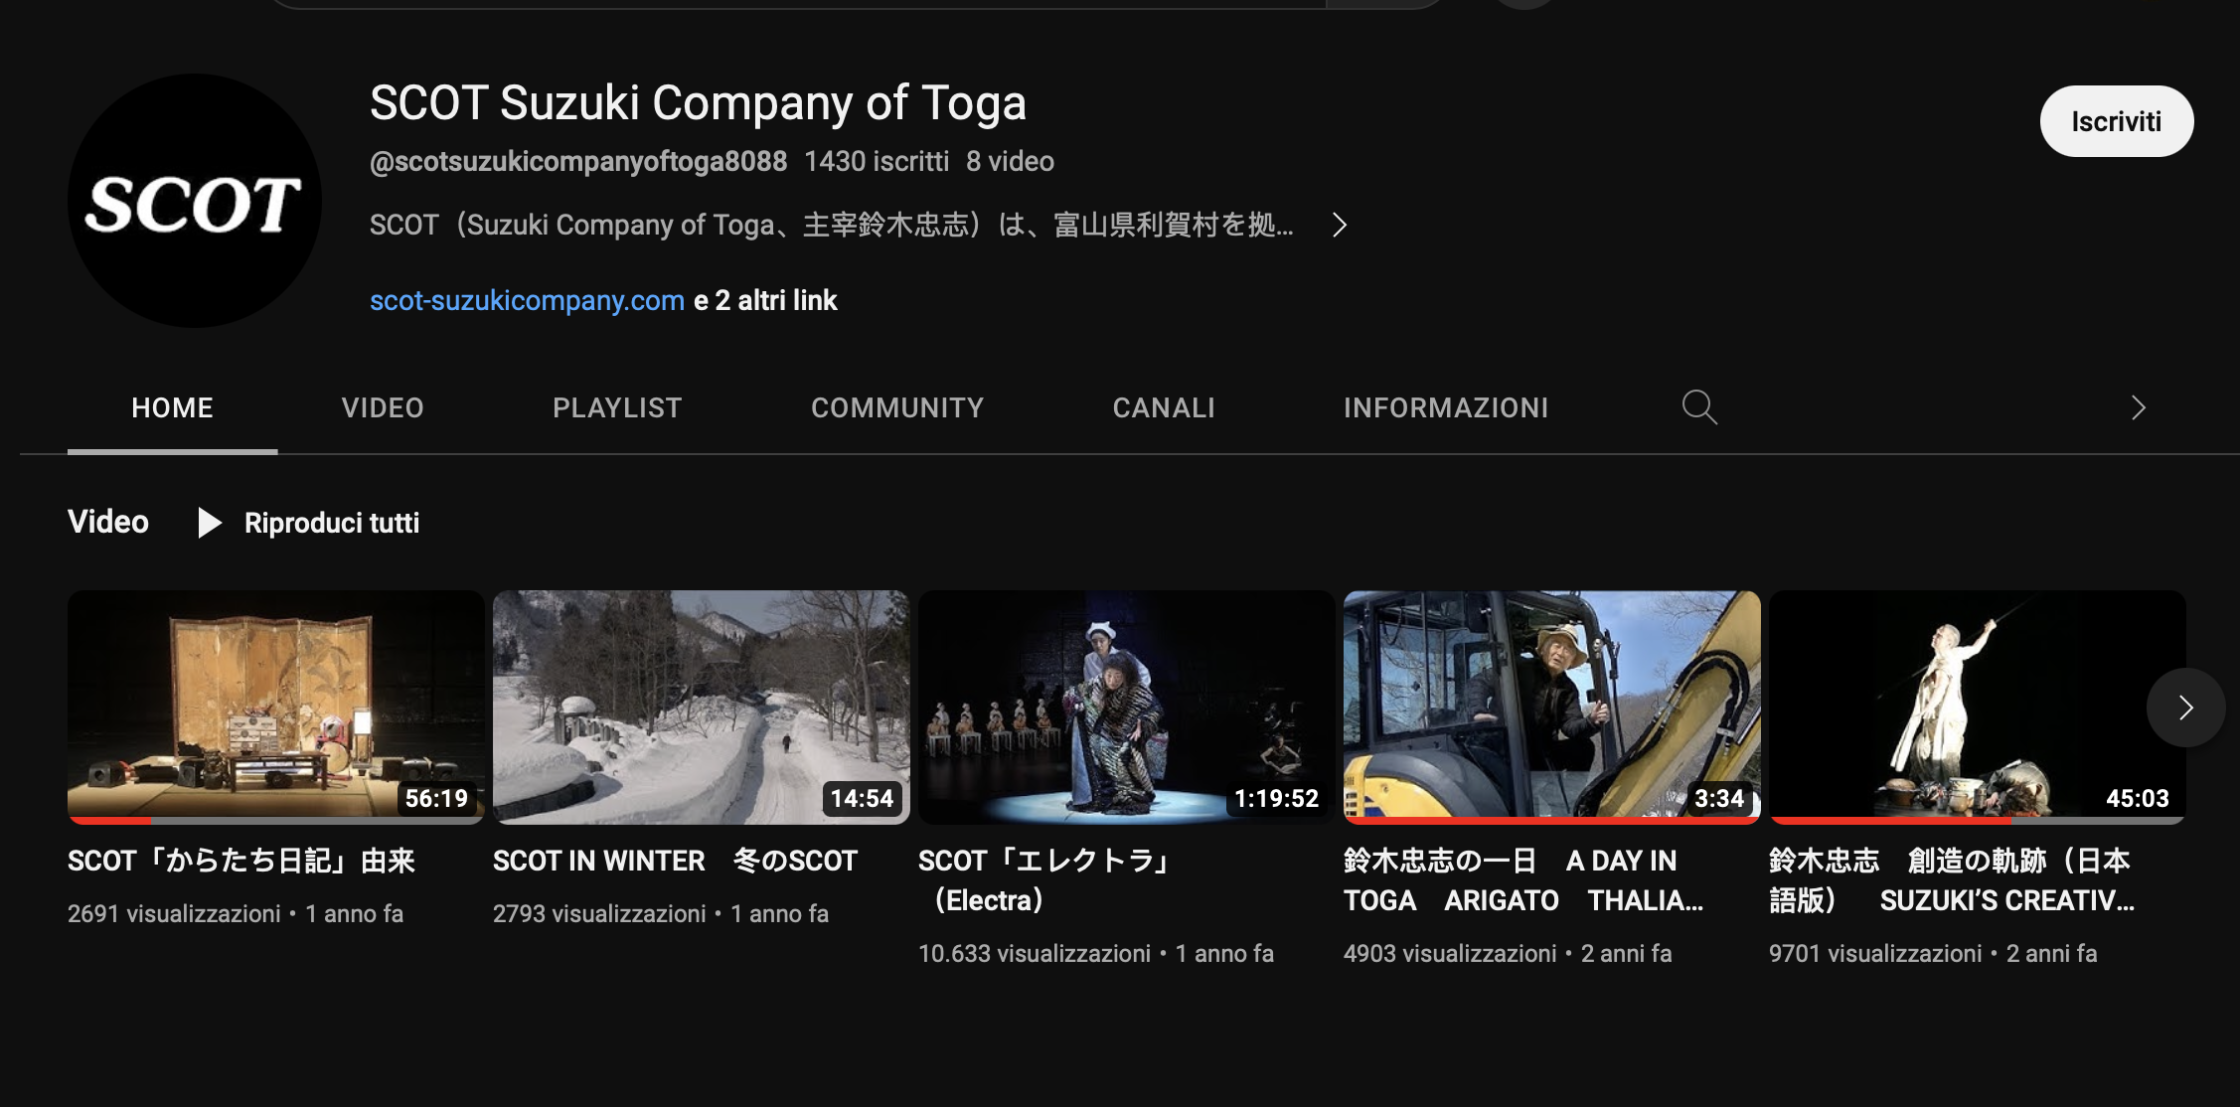 la pagina del profilo YouTube della compagnia SCOT con gli spettacoli caricati ad oggi